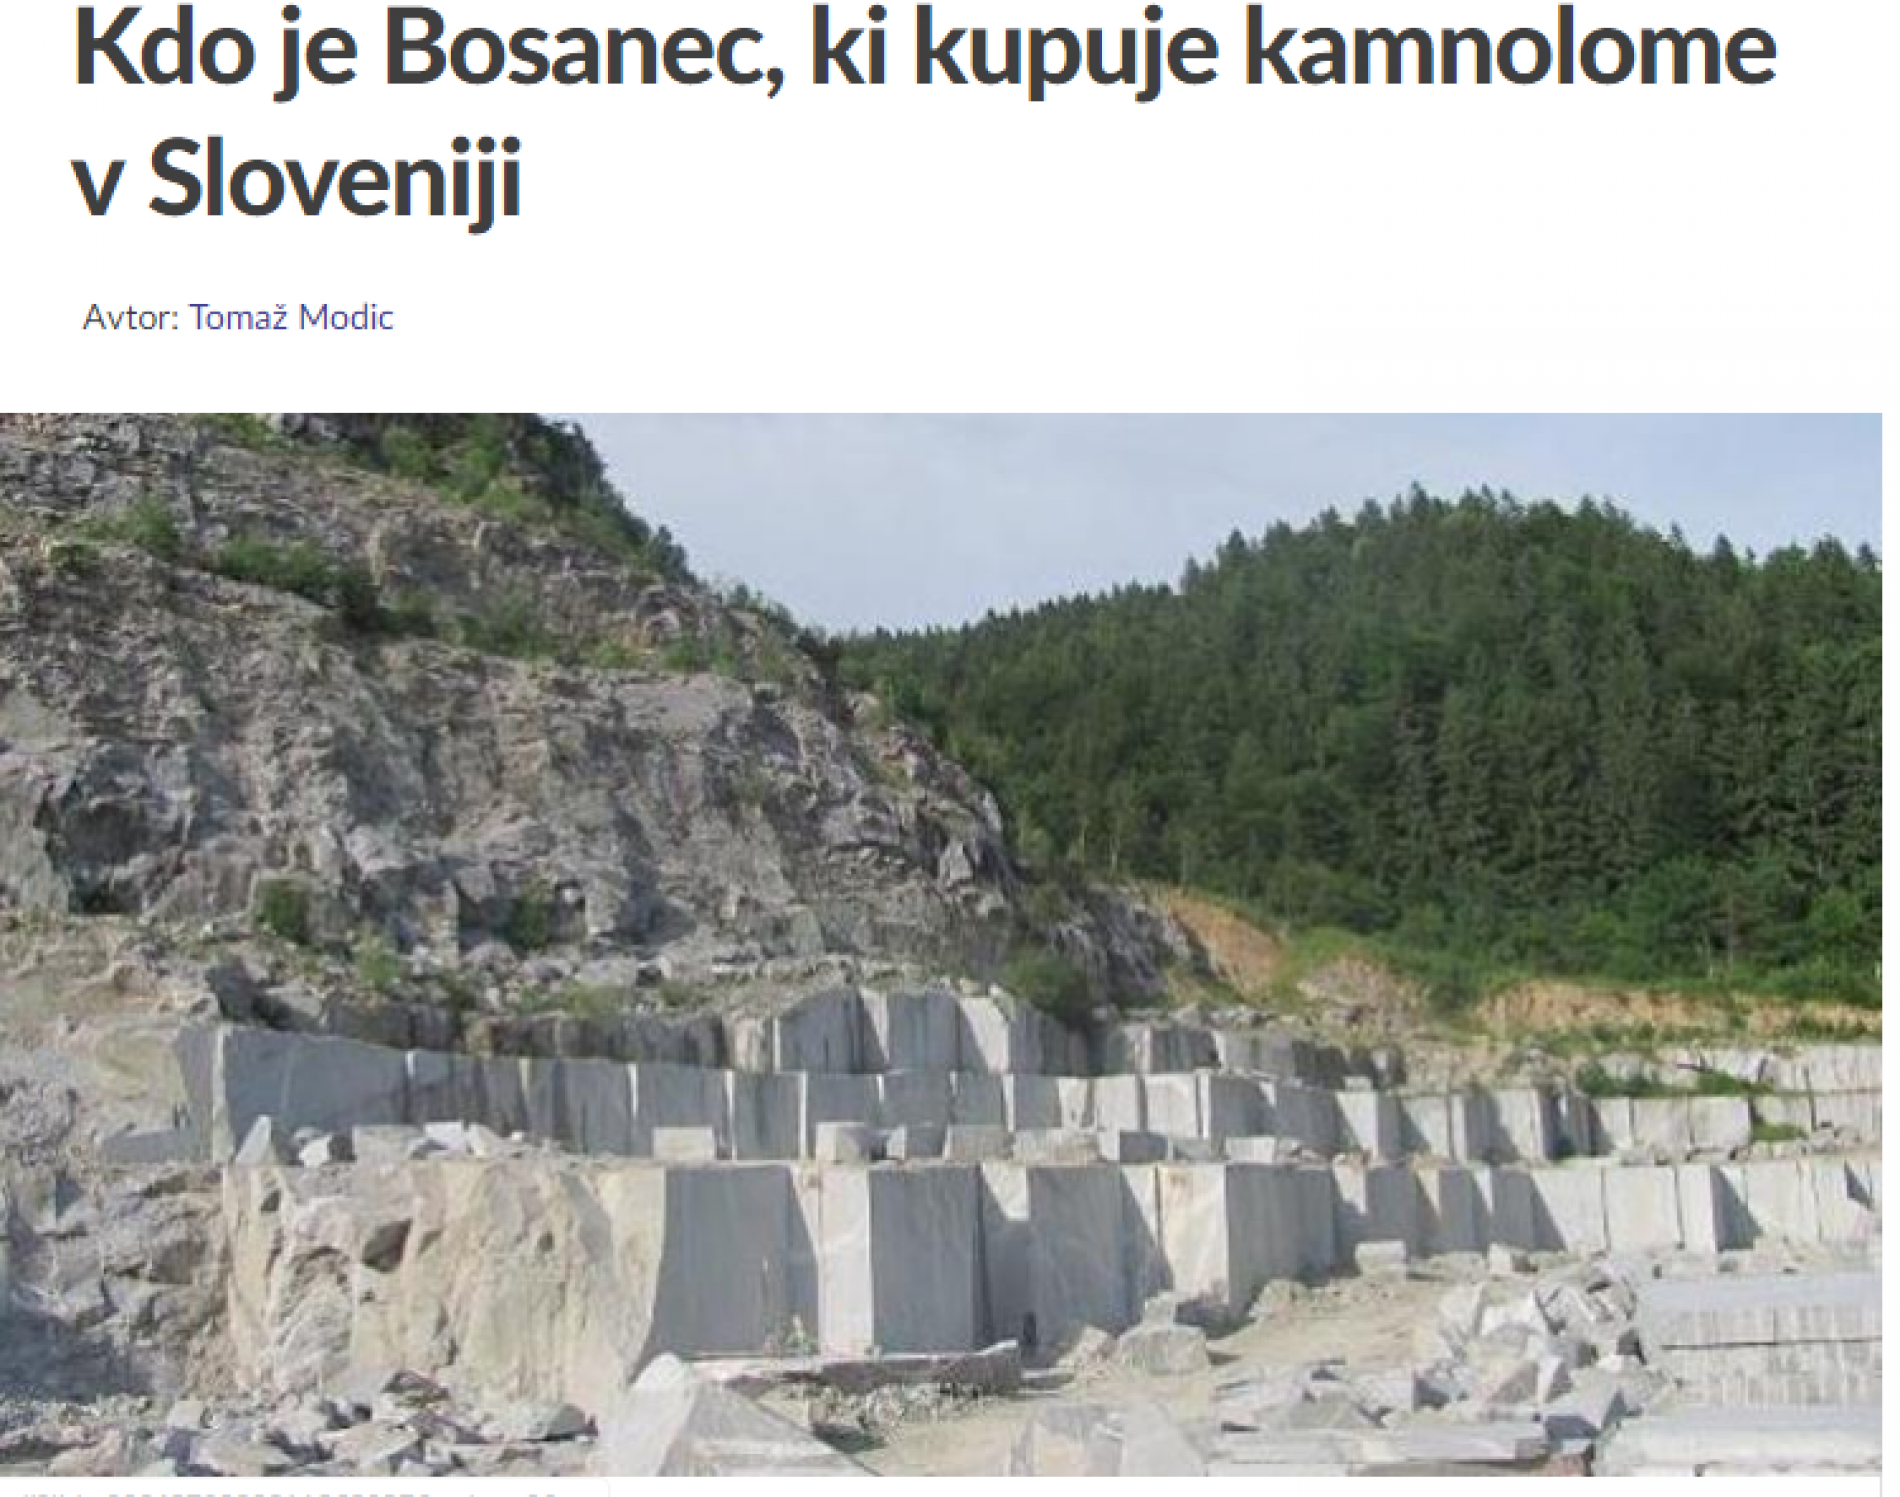 Ko je Bosanac koji kupuje kamenolome u Sloveniji pitaju se tamošnji mediji